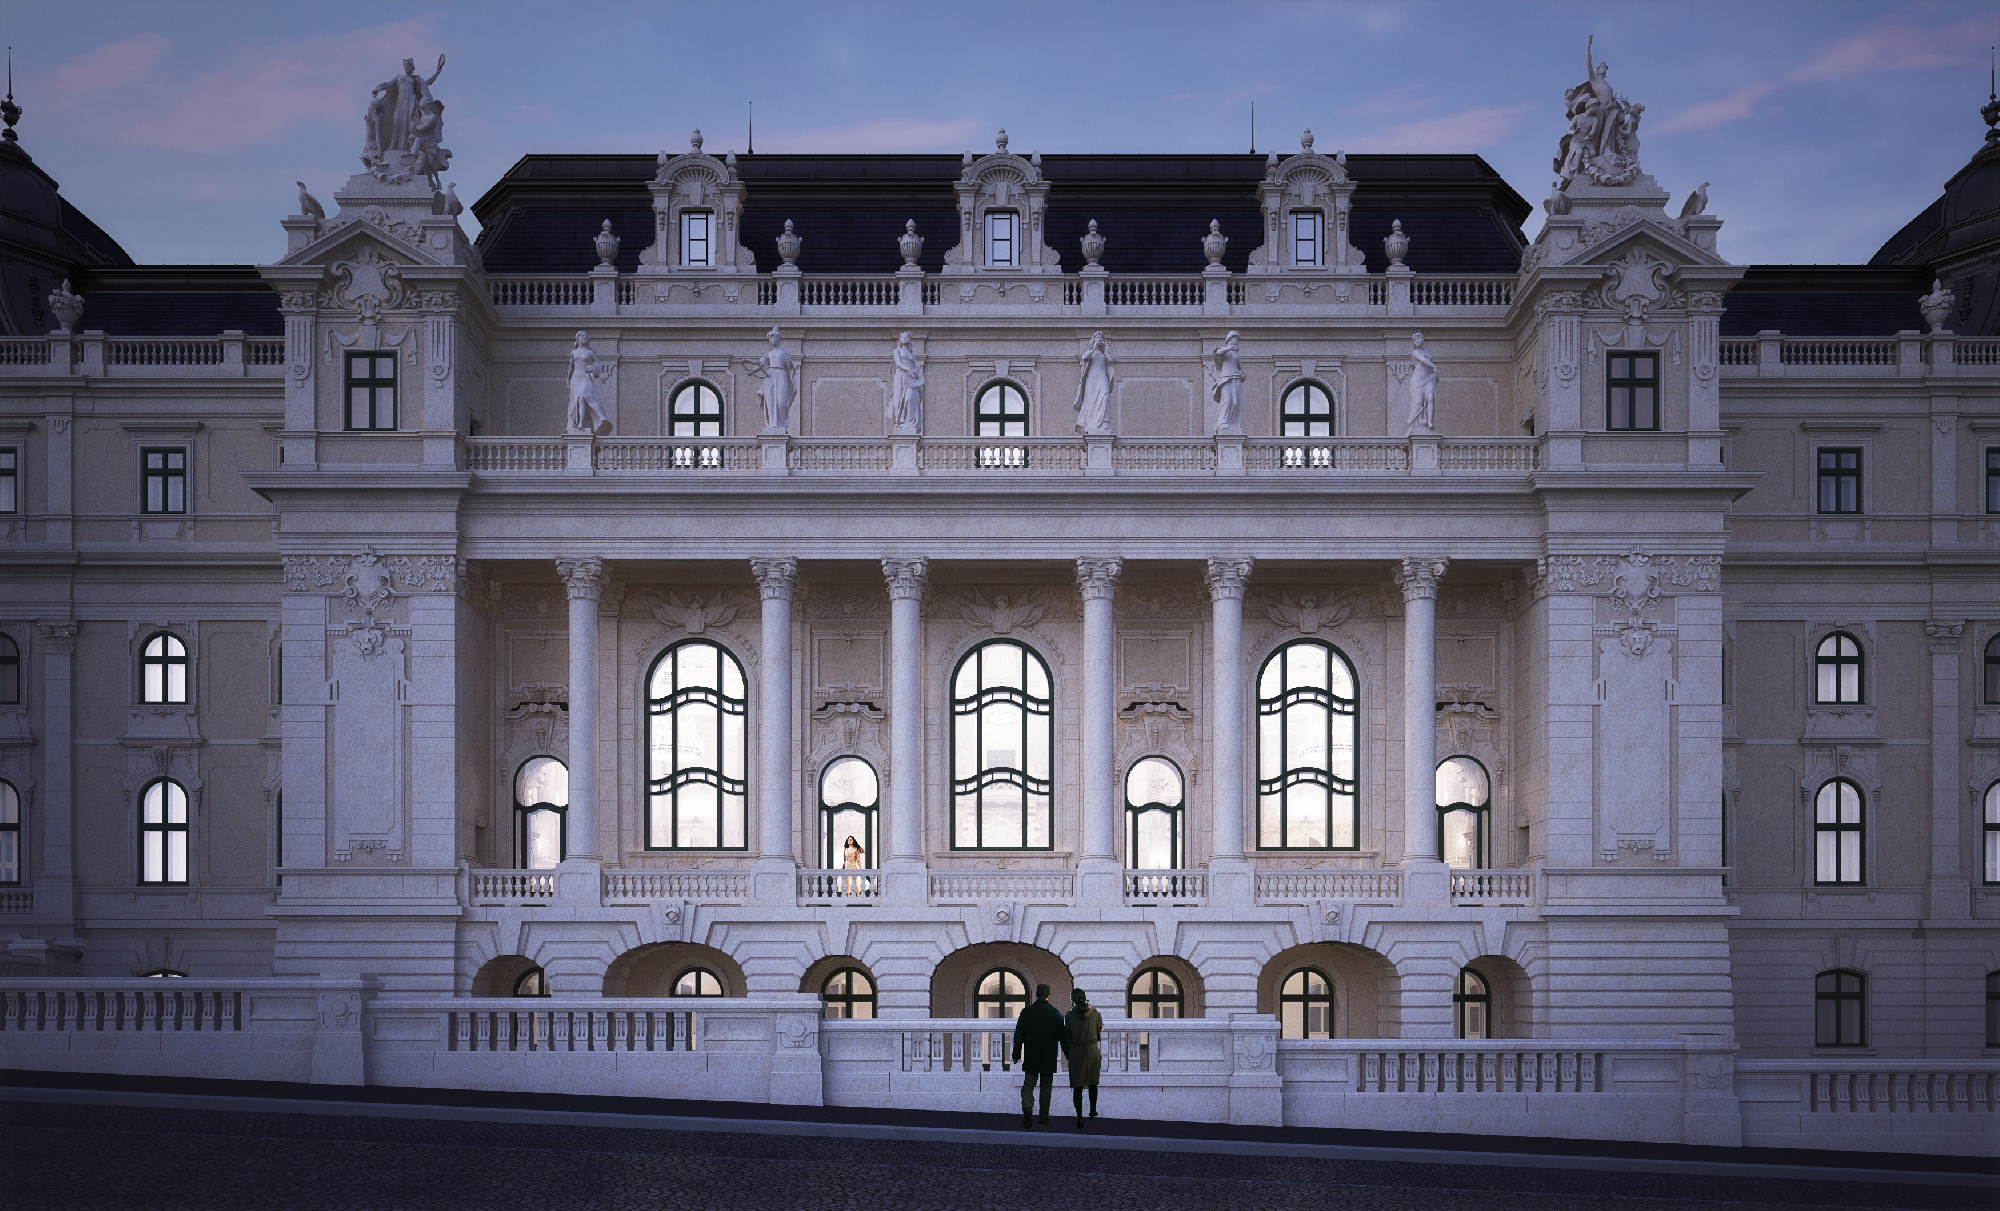 Befejeződött a Budavári Palota részletes felmérése és megkezdődött az épületegyüttes teljes helyreállításának tervezése